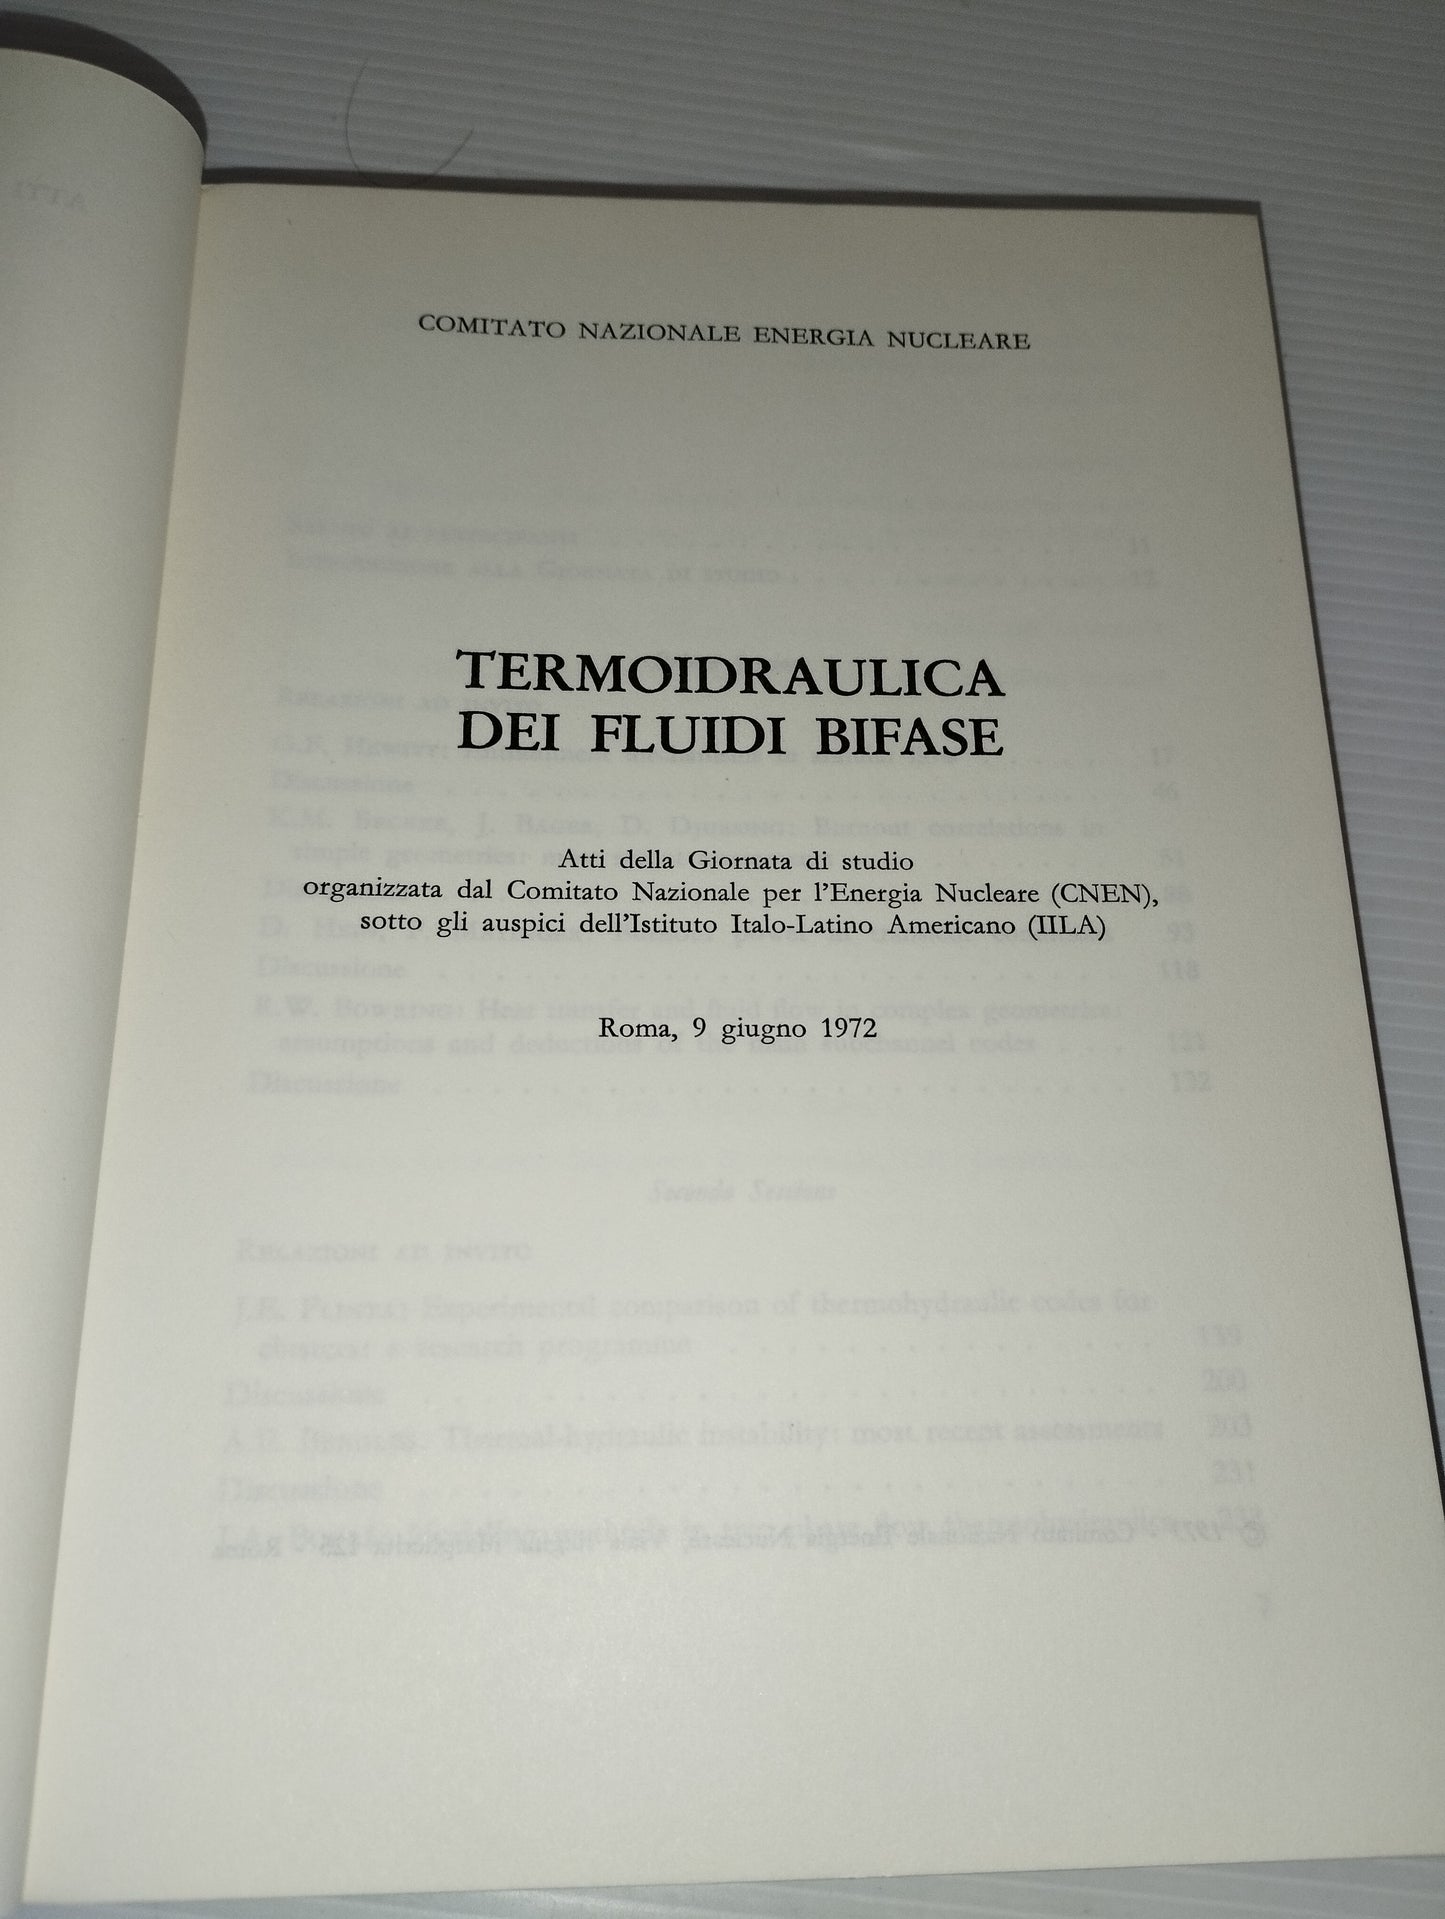 Termoidraulica Dei Fluidi Bifase
Libro
Comitato Nazionale Energia Nucleare
In lingua inglese con qualche  parte in lingua italiana